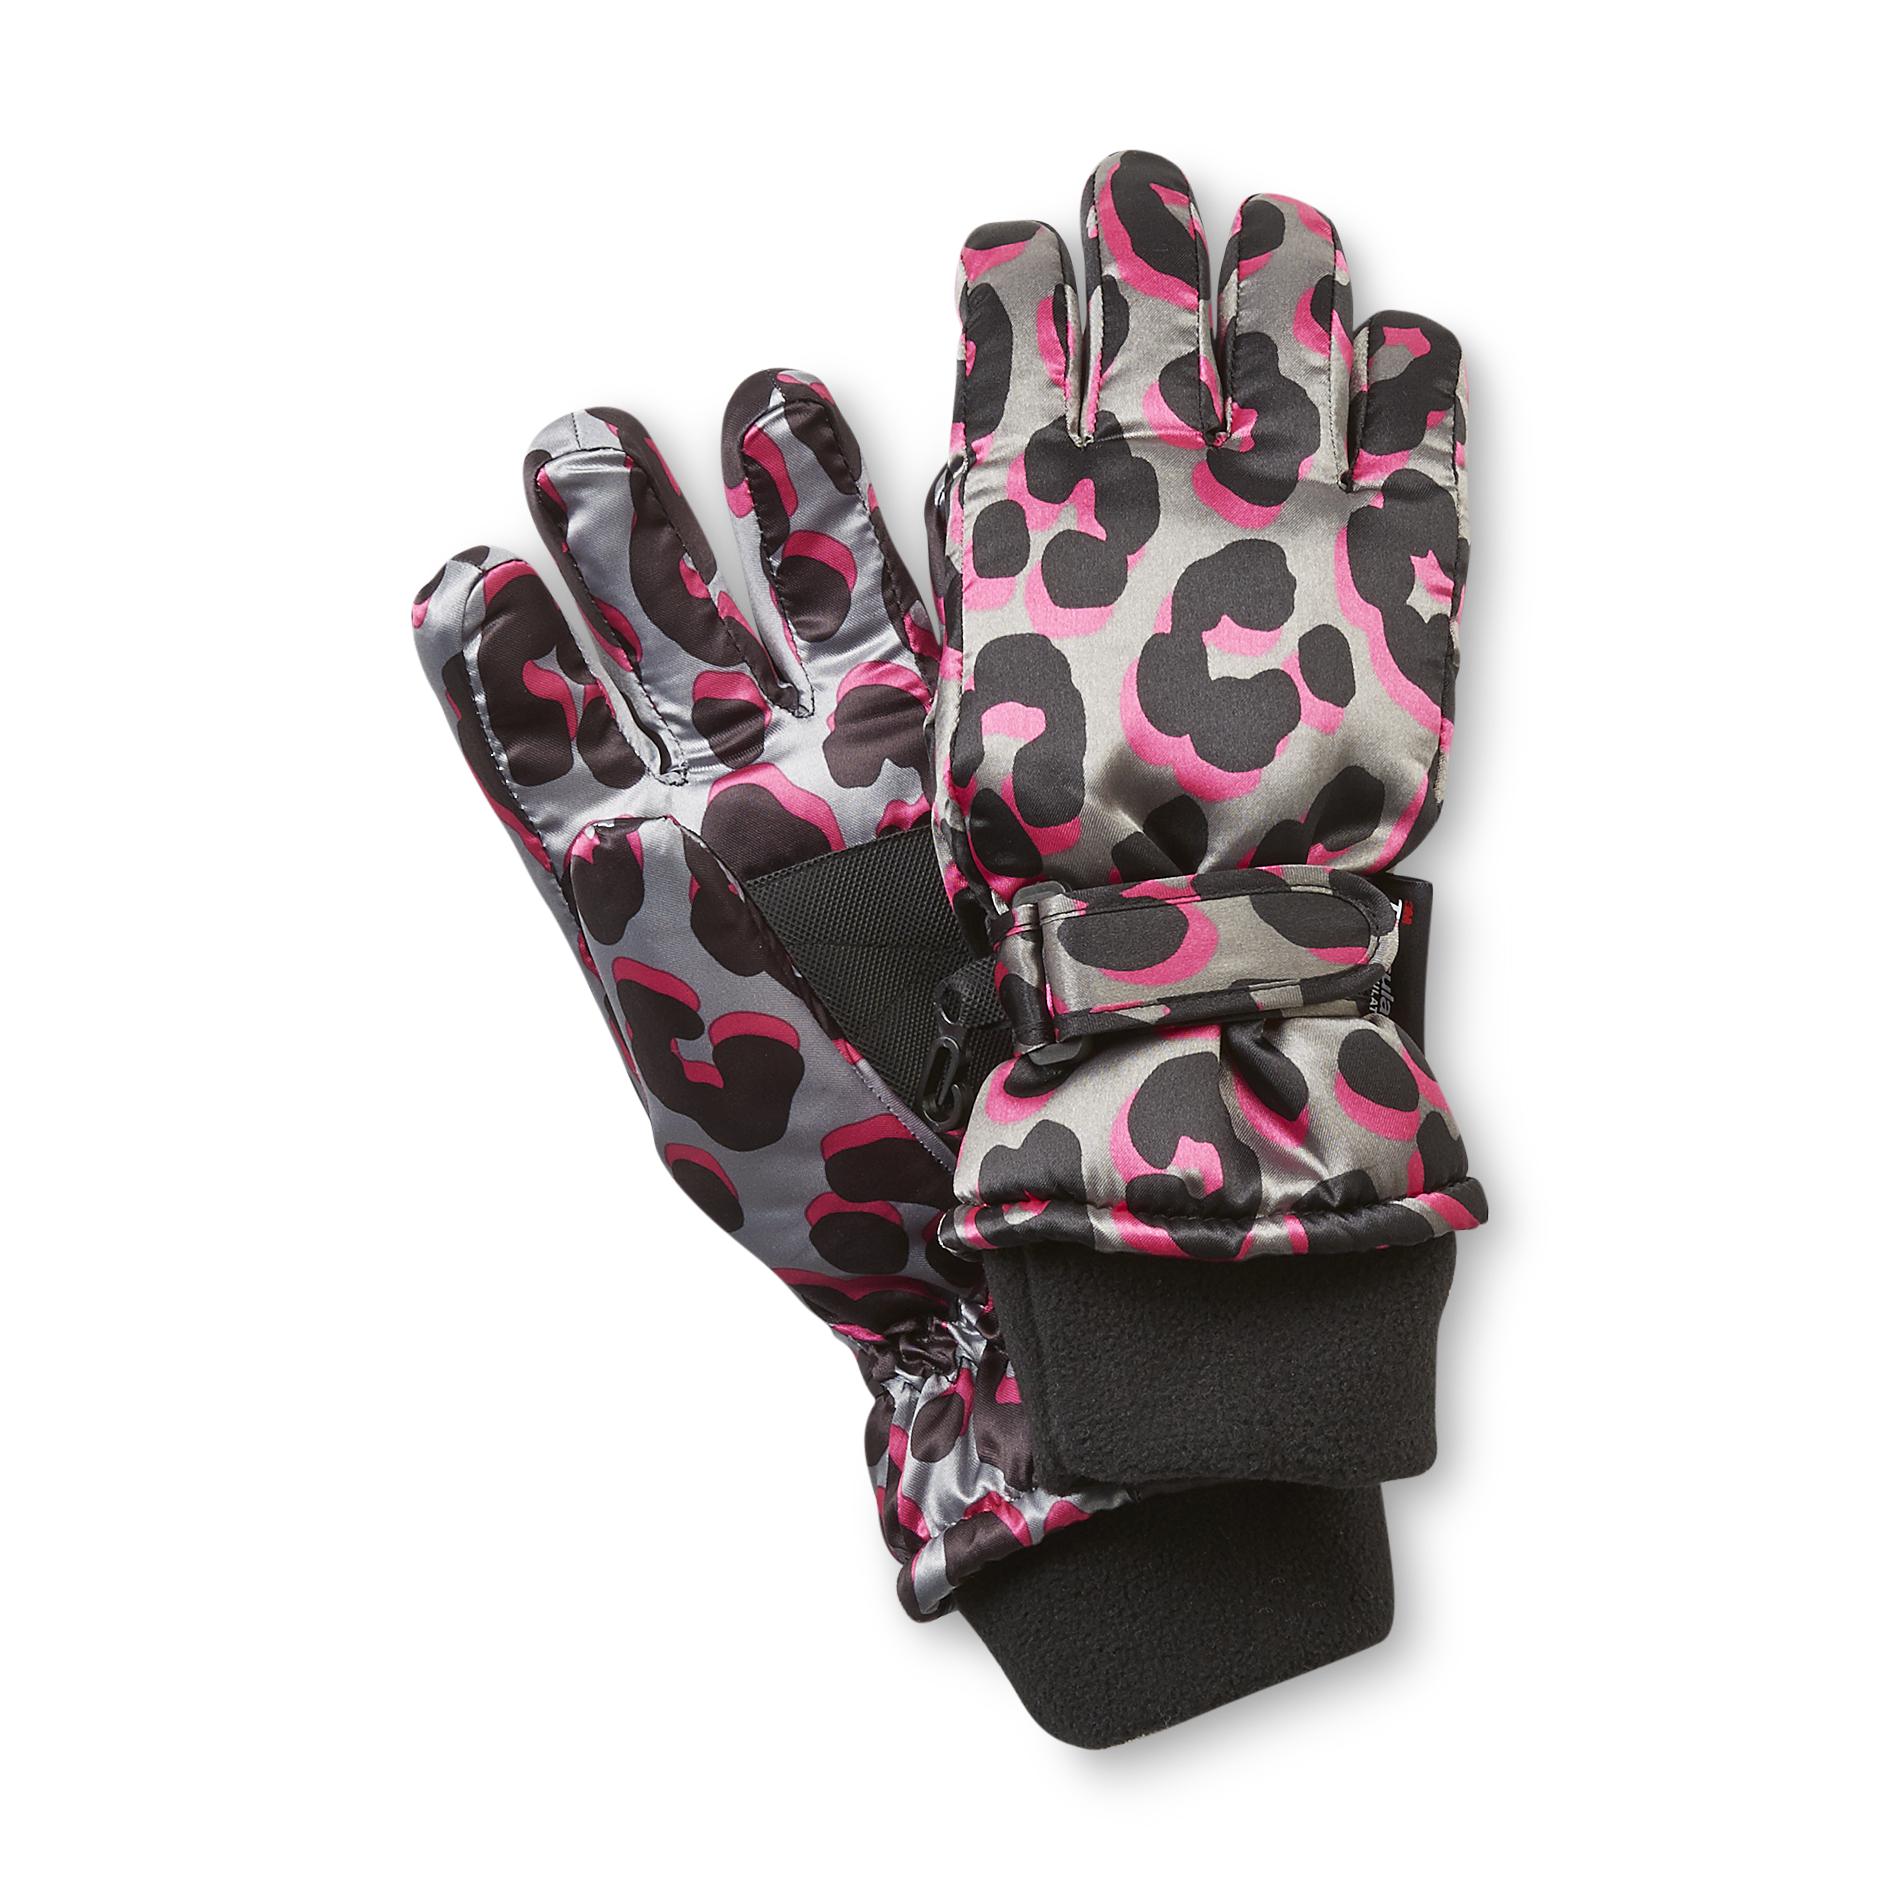 Athletech Girl's Tusser Ski Gloves - Leopard Print